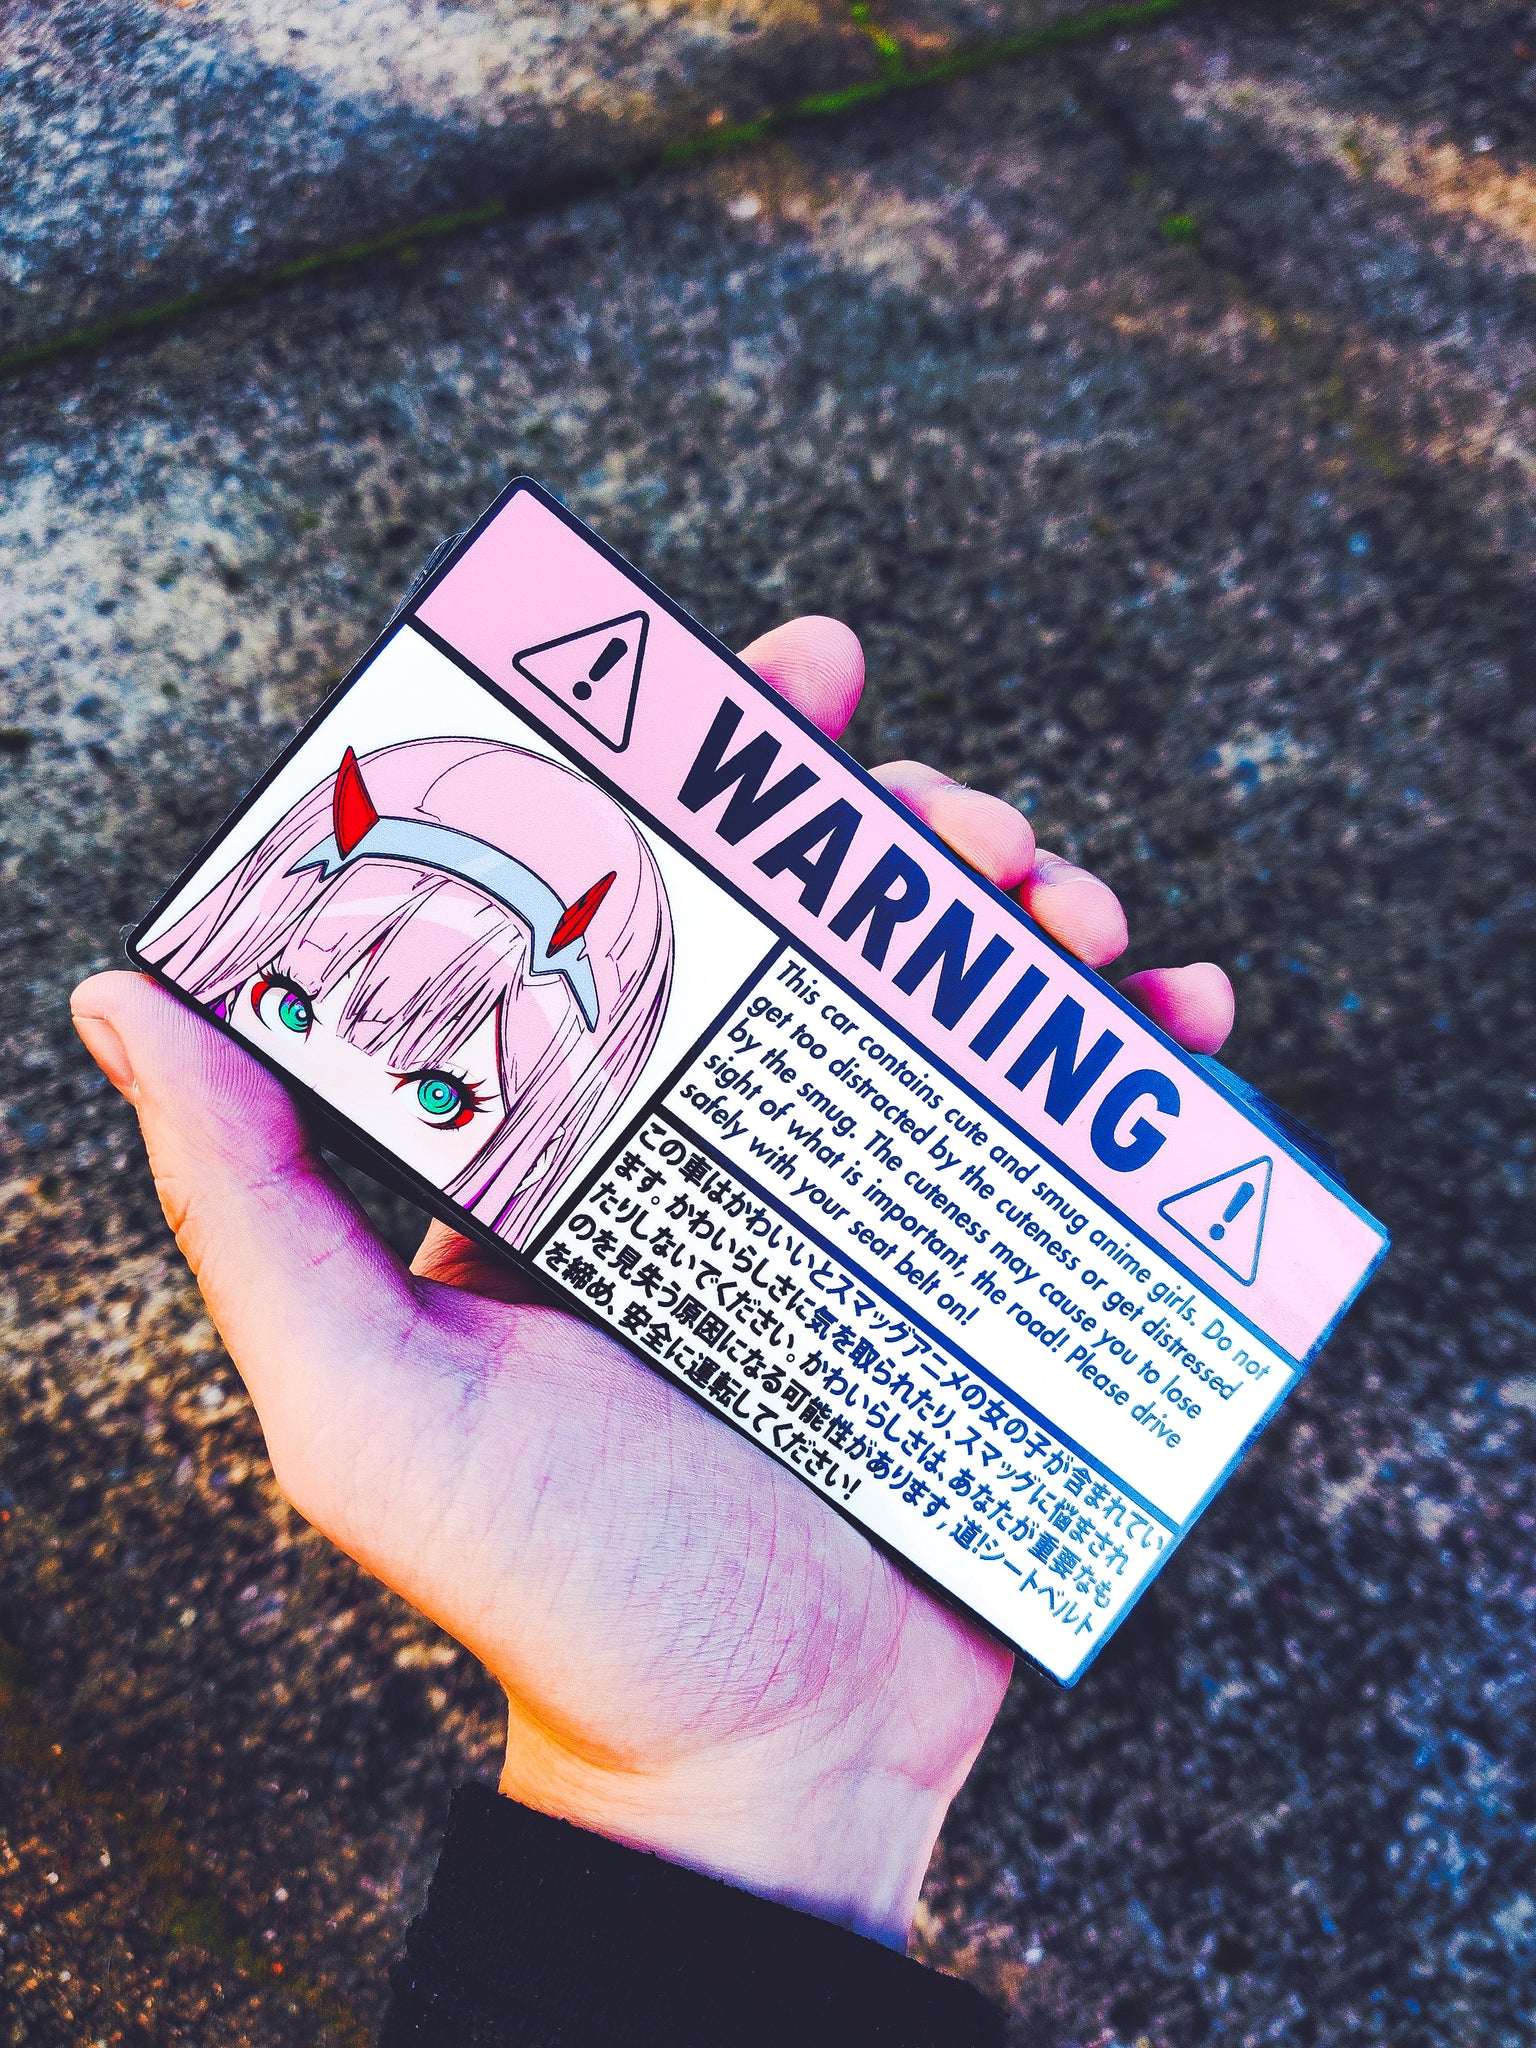 パートナー殺し: Warning!